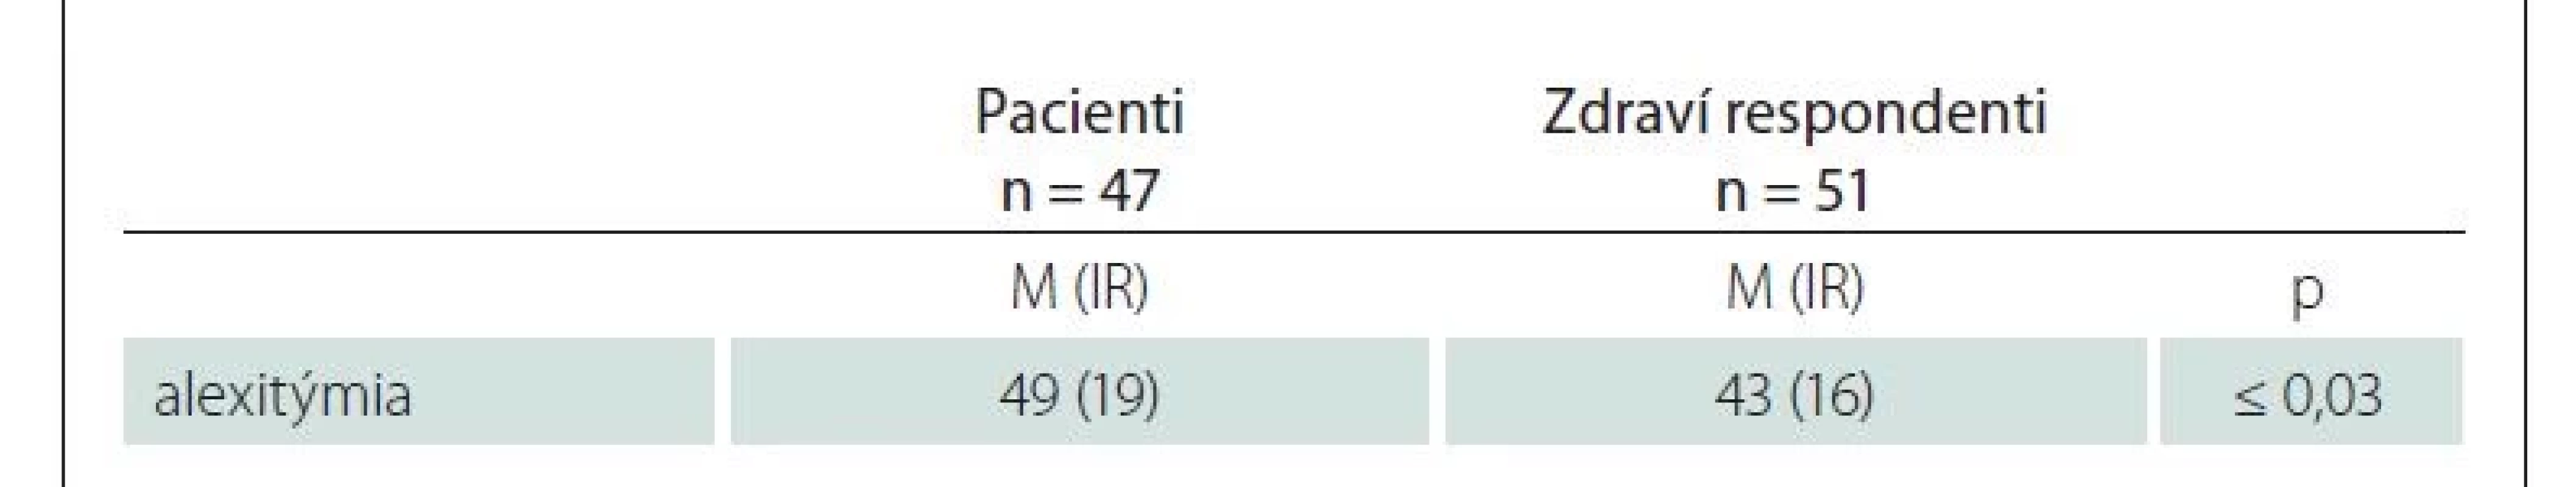 Rozdiely priemerných hodnôt alexitýmie v klinickom a kontrolnom súbore.